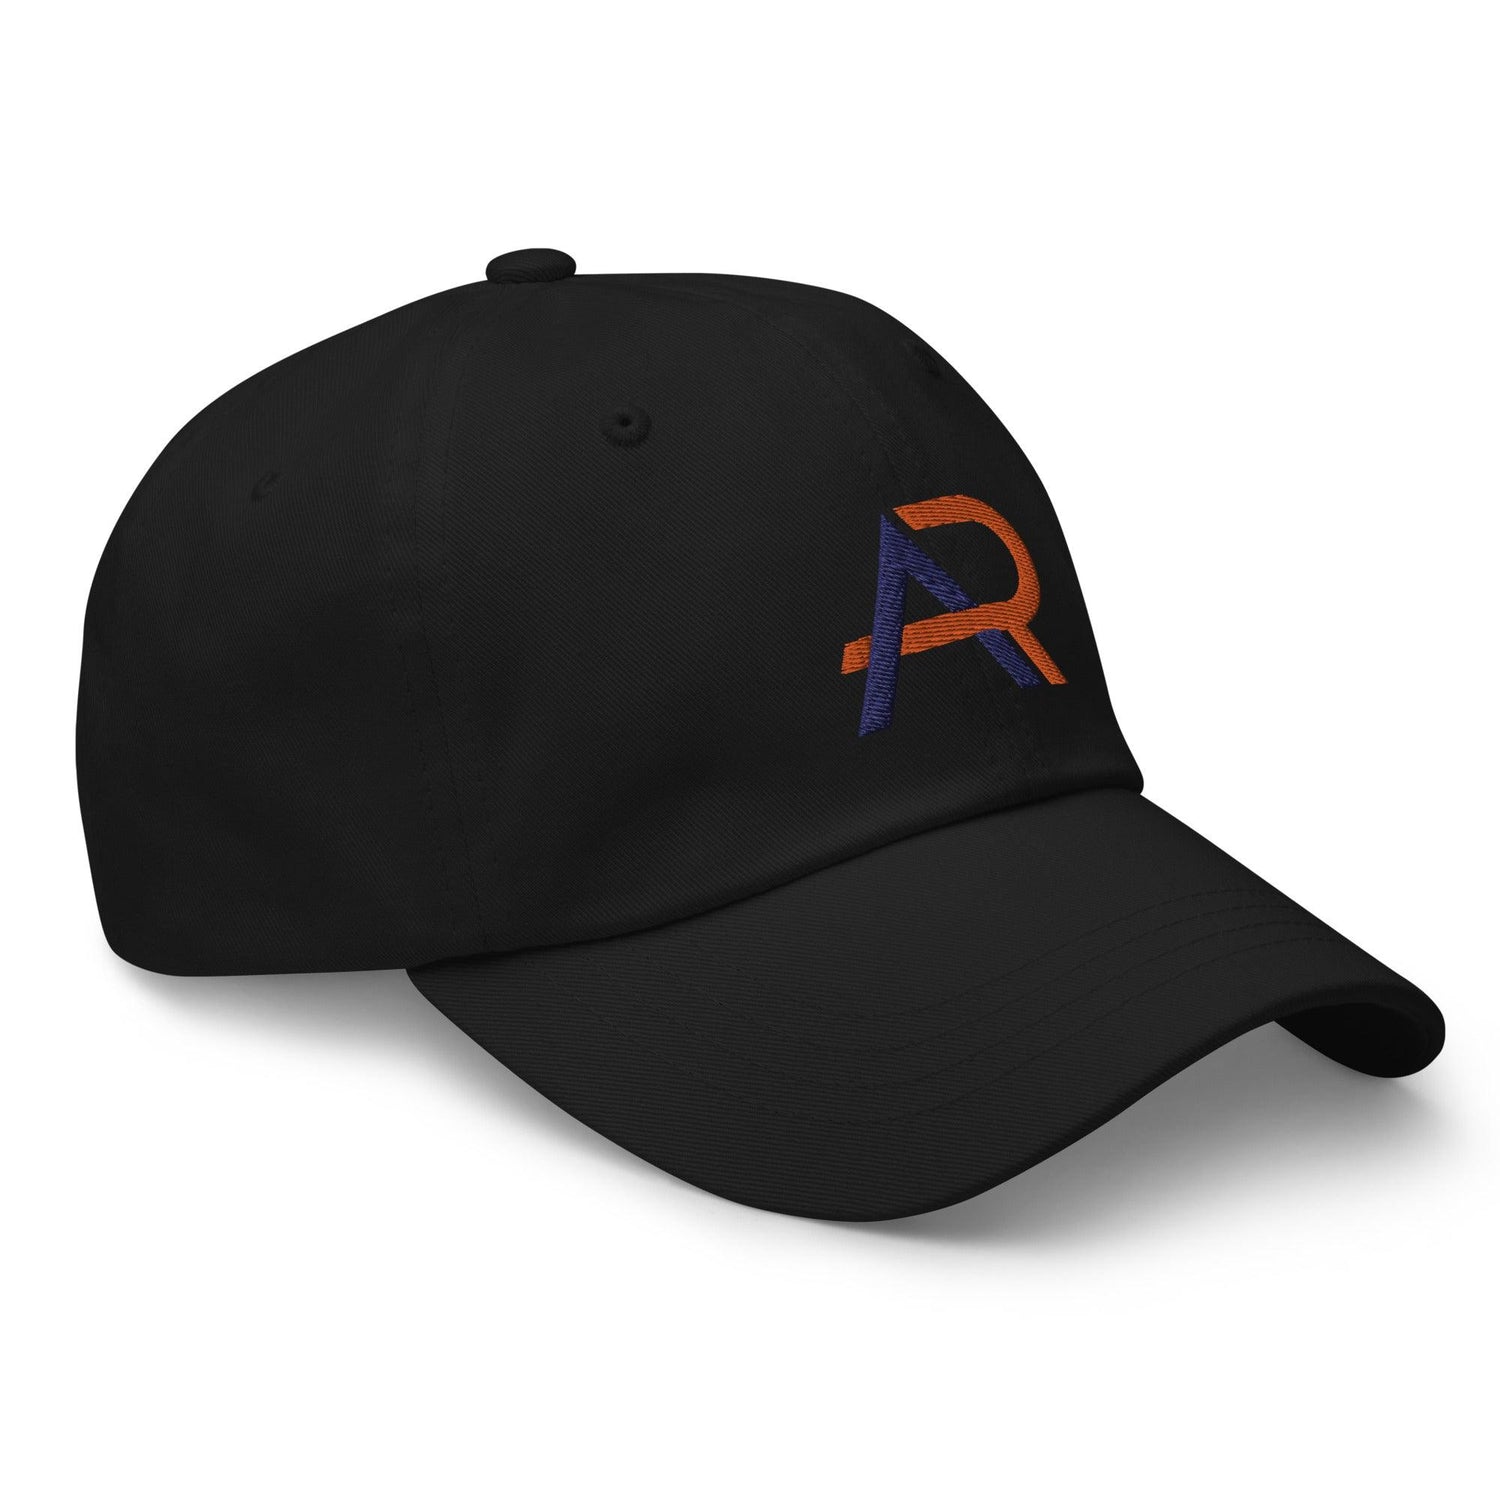 Alex Rao "Elite" hat - Fan Arch